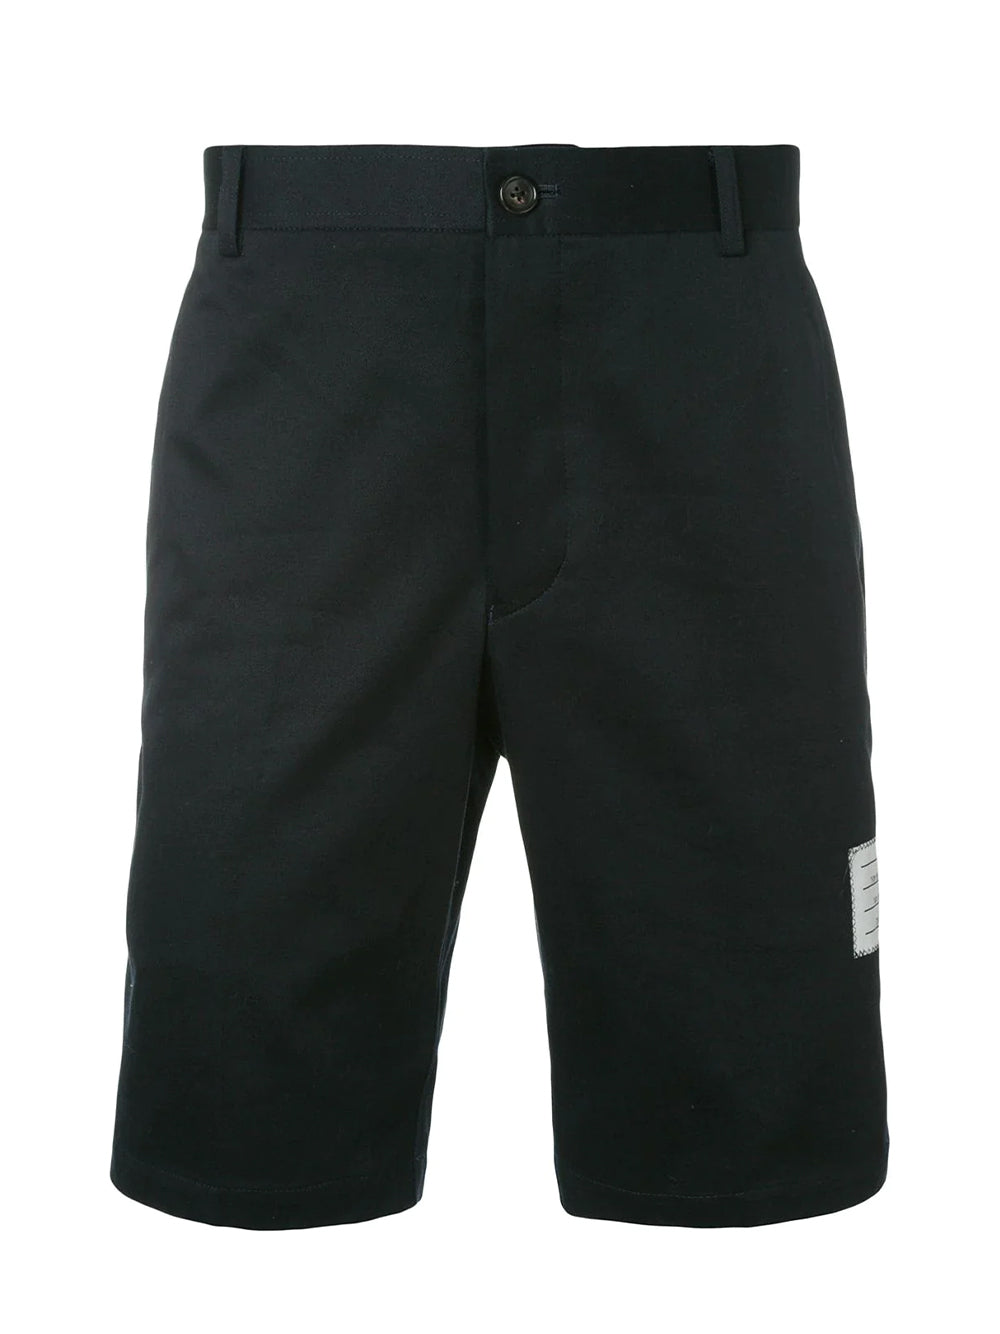 Cotton Interlock Mid Thigh Summer Short (Navy)